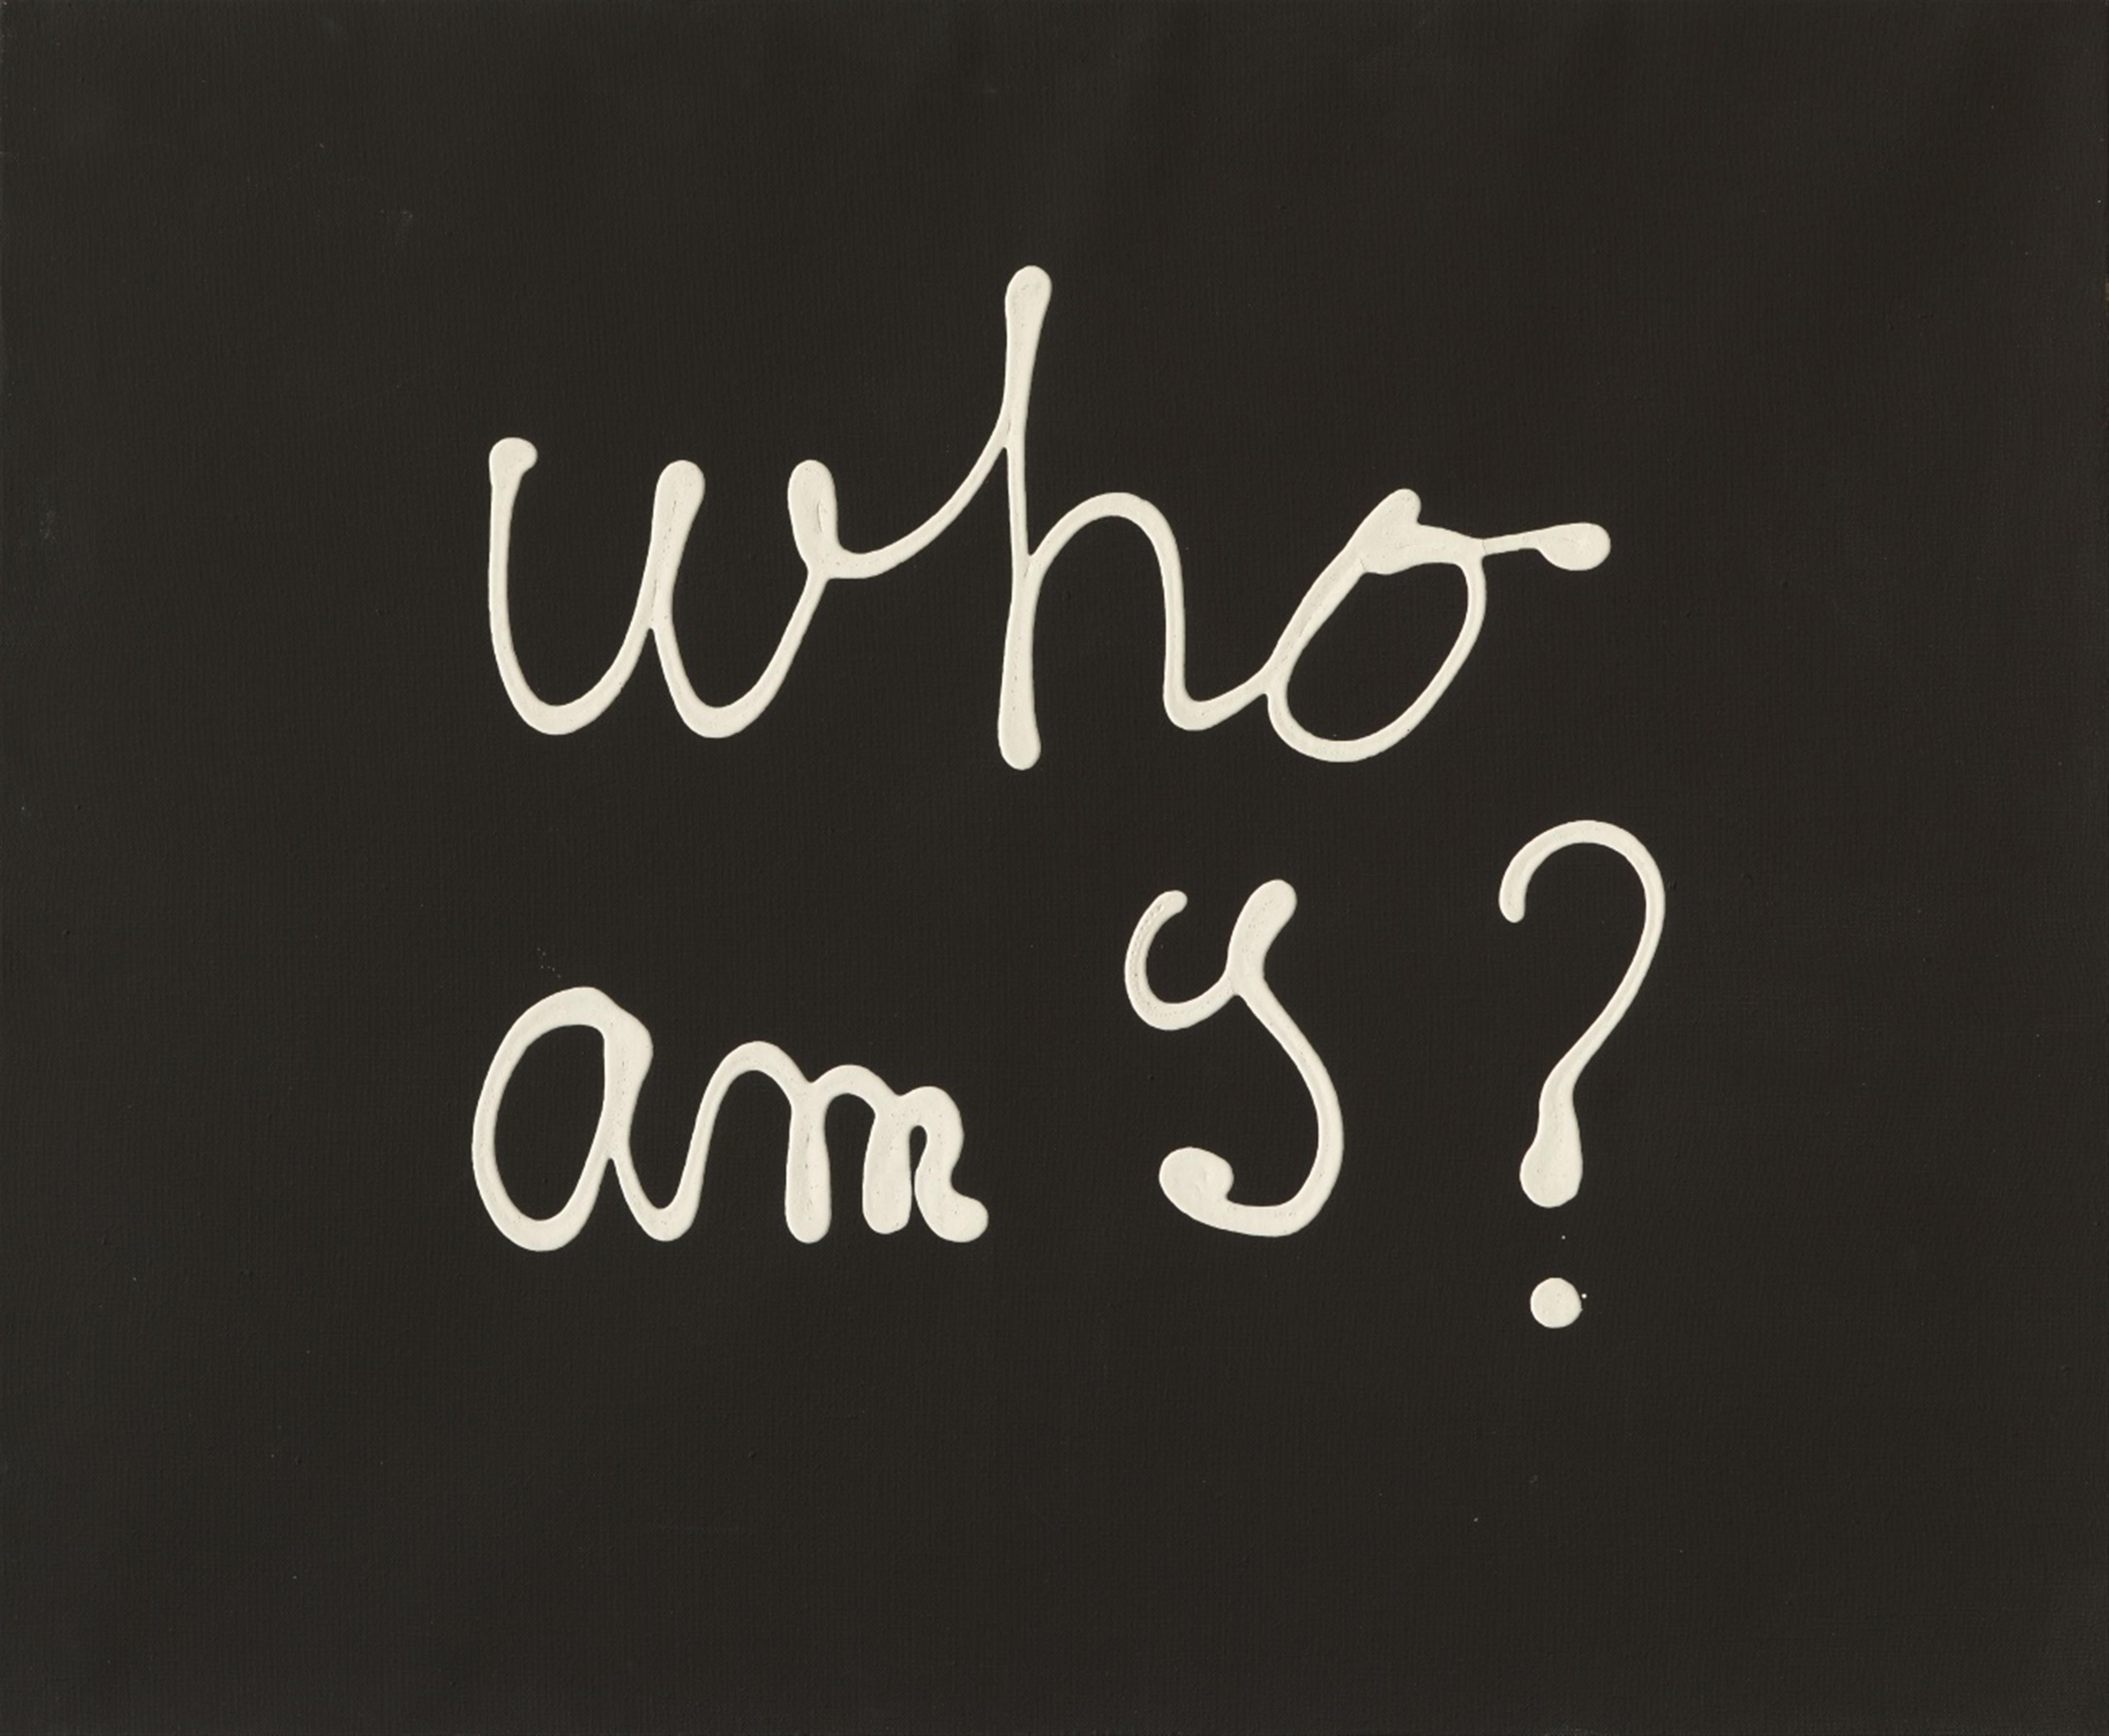 Ben Vautier - WHO AM I ?